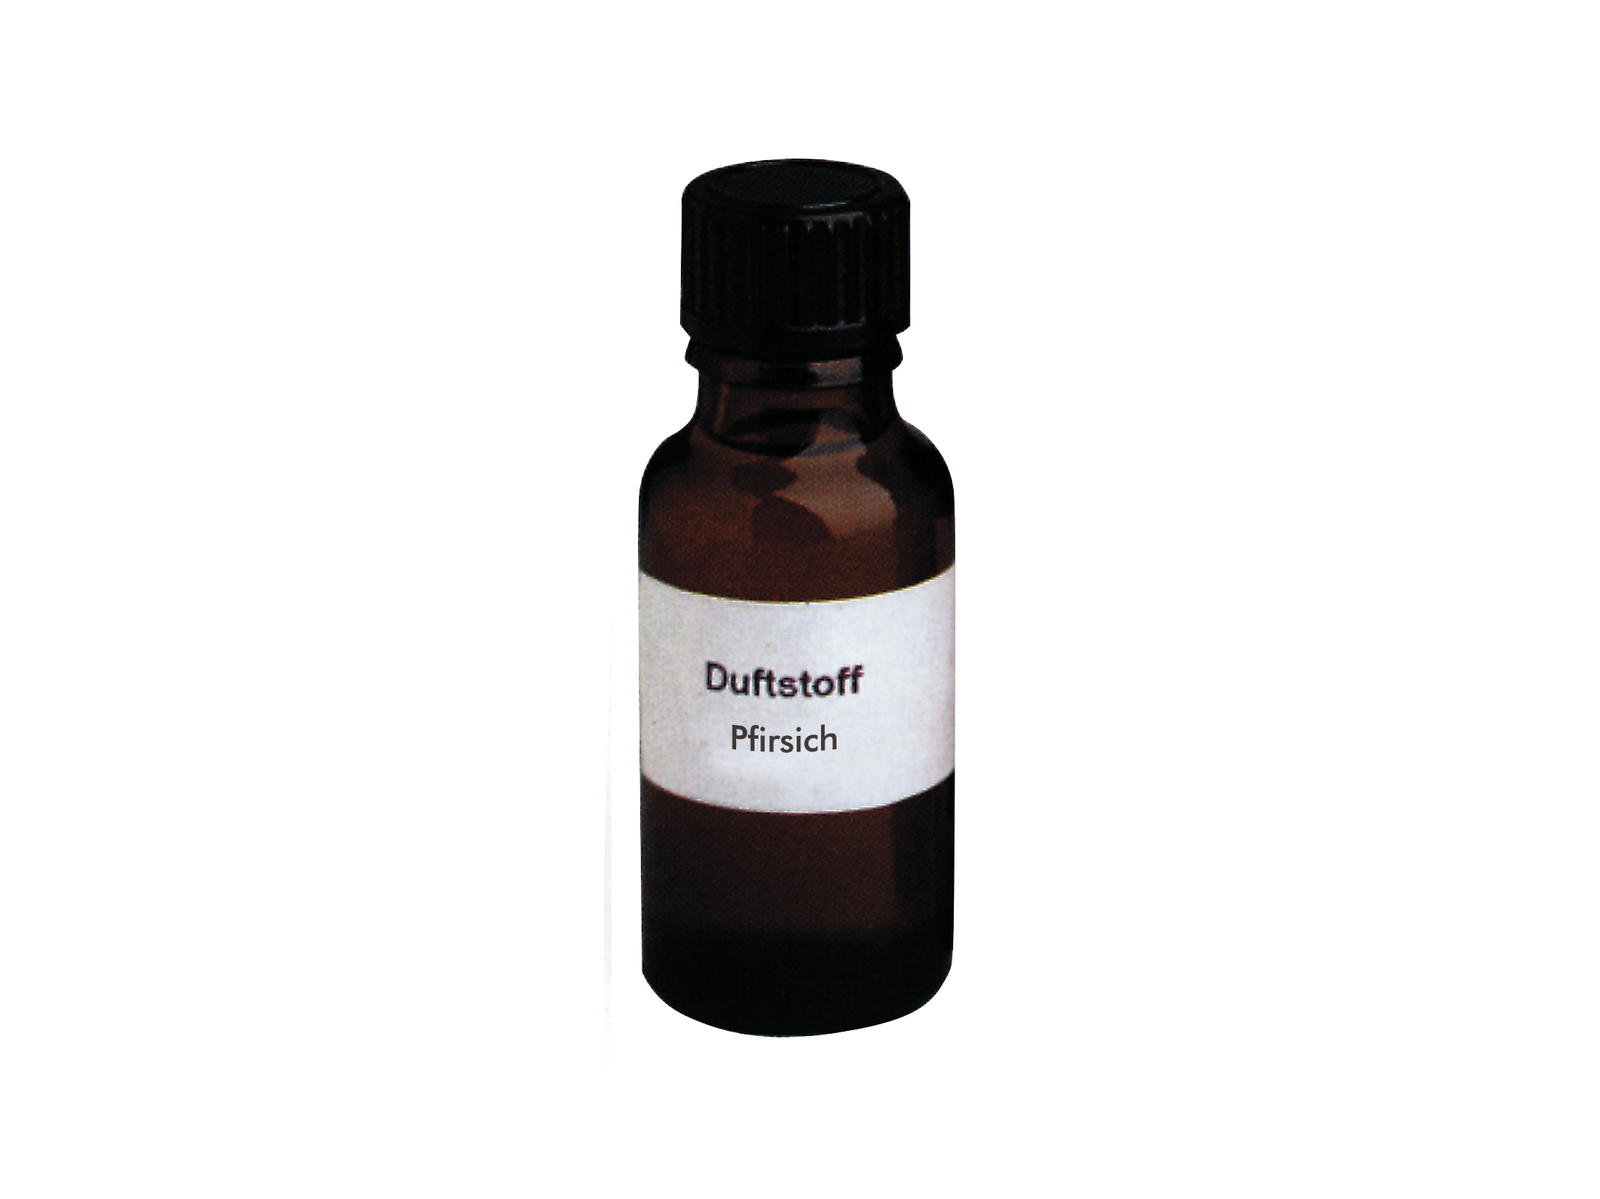 EUROLITE Nebelfluid-Duftstoff, 20ml, Pfirsich